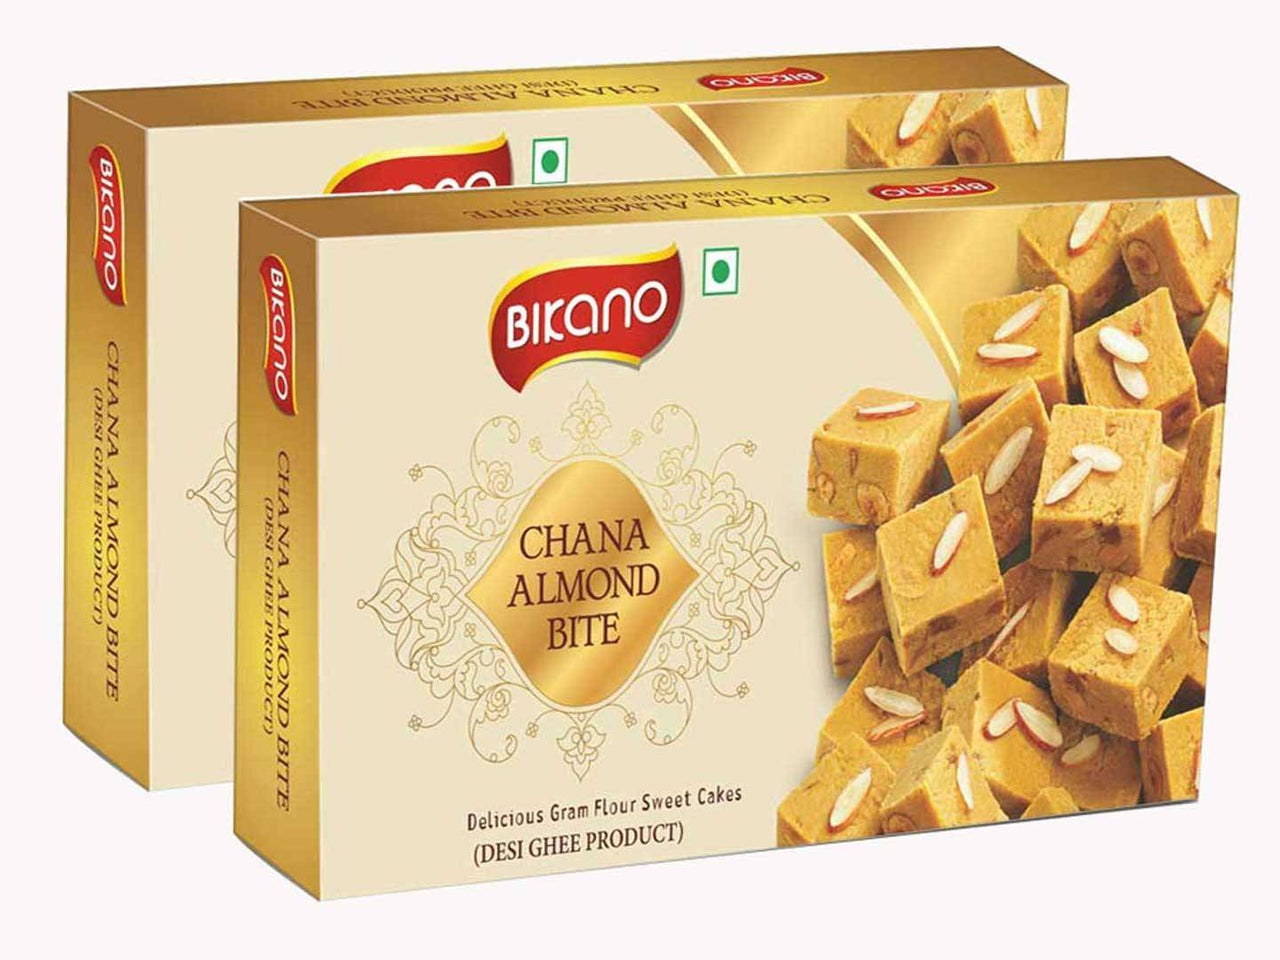 Bikano Chana Almond Bite